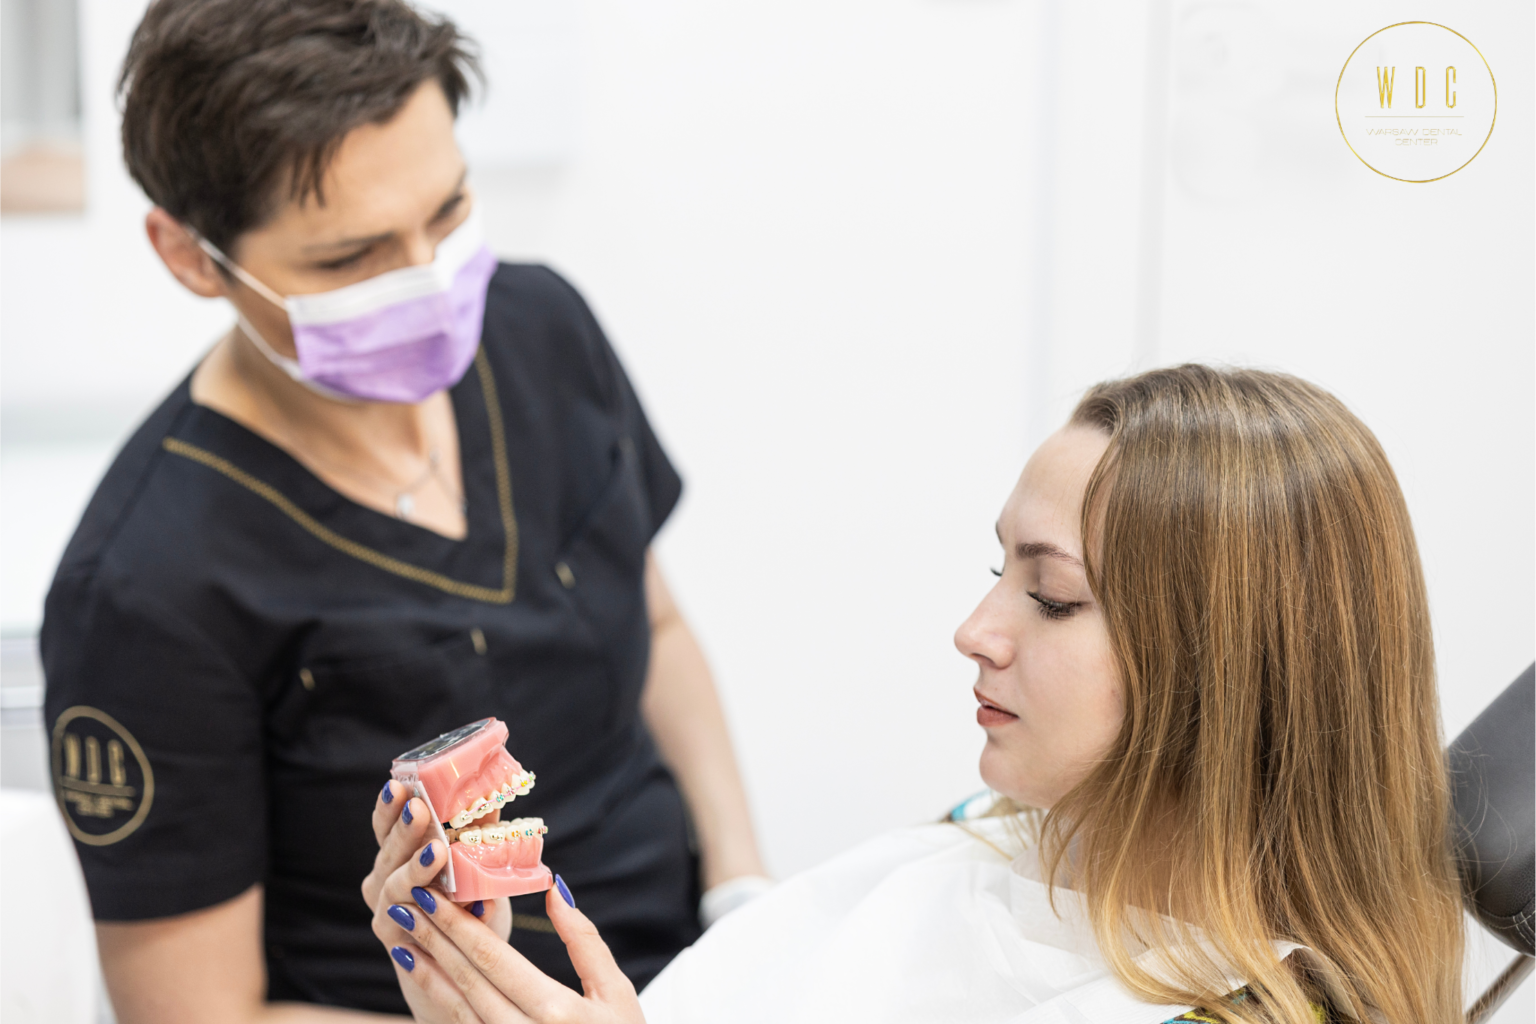 Jedna z naszych dyplomowanych higienistek Wioletta Zawierucha udziela instruktażu higieny pacjentce, która właśnie dostała nowy aparat ortodontyczny.